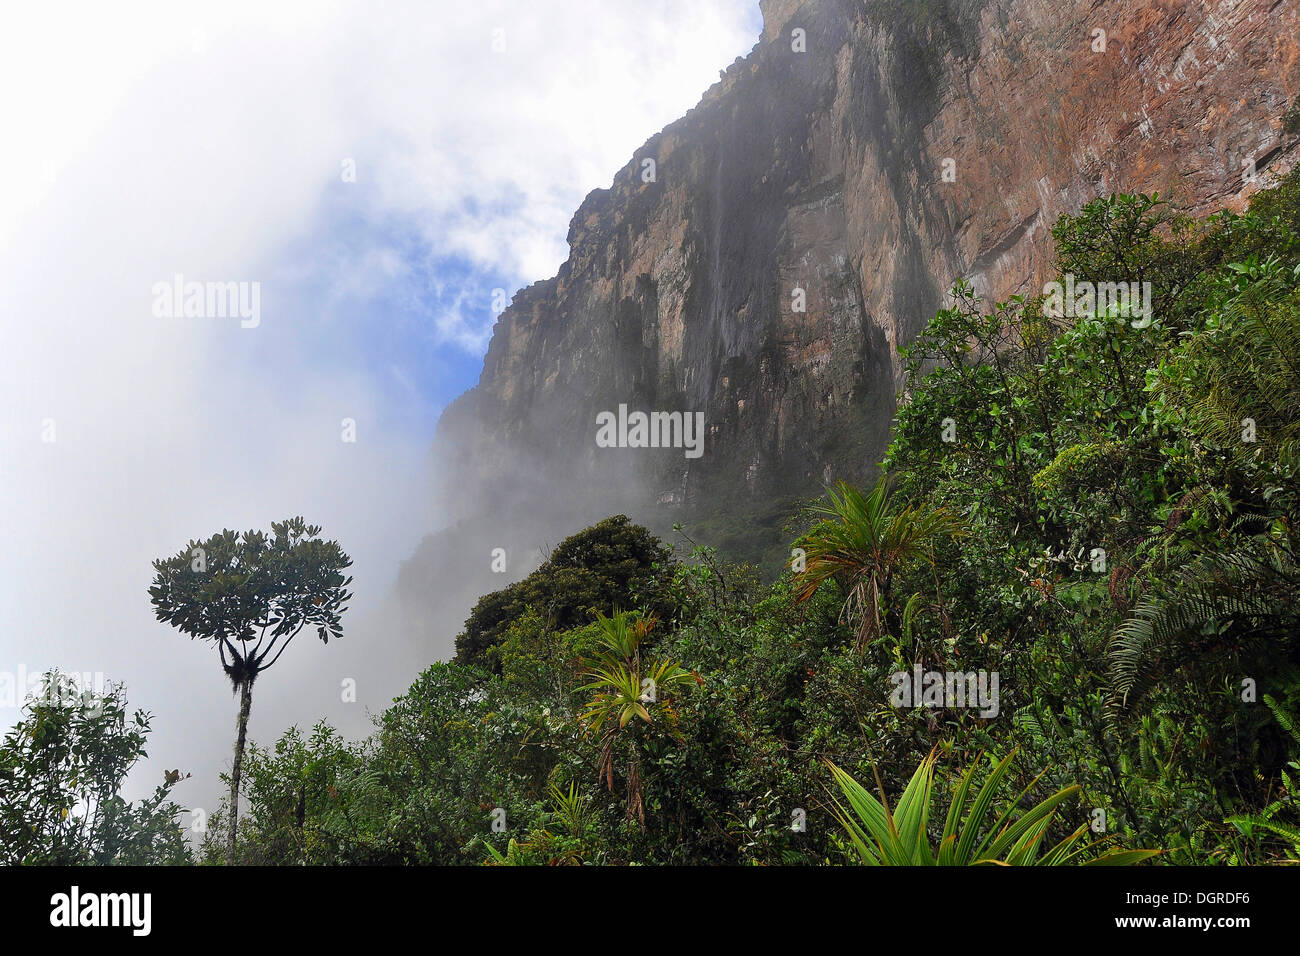 Steilhang angesichts von roraima Tafelberg im Nebel, Dreiländereck von Brasilien, Venezuela und Guyana, Südamerika Stockfoto